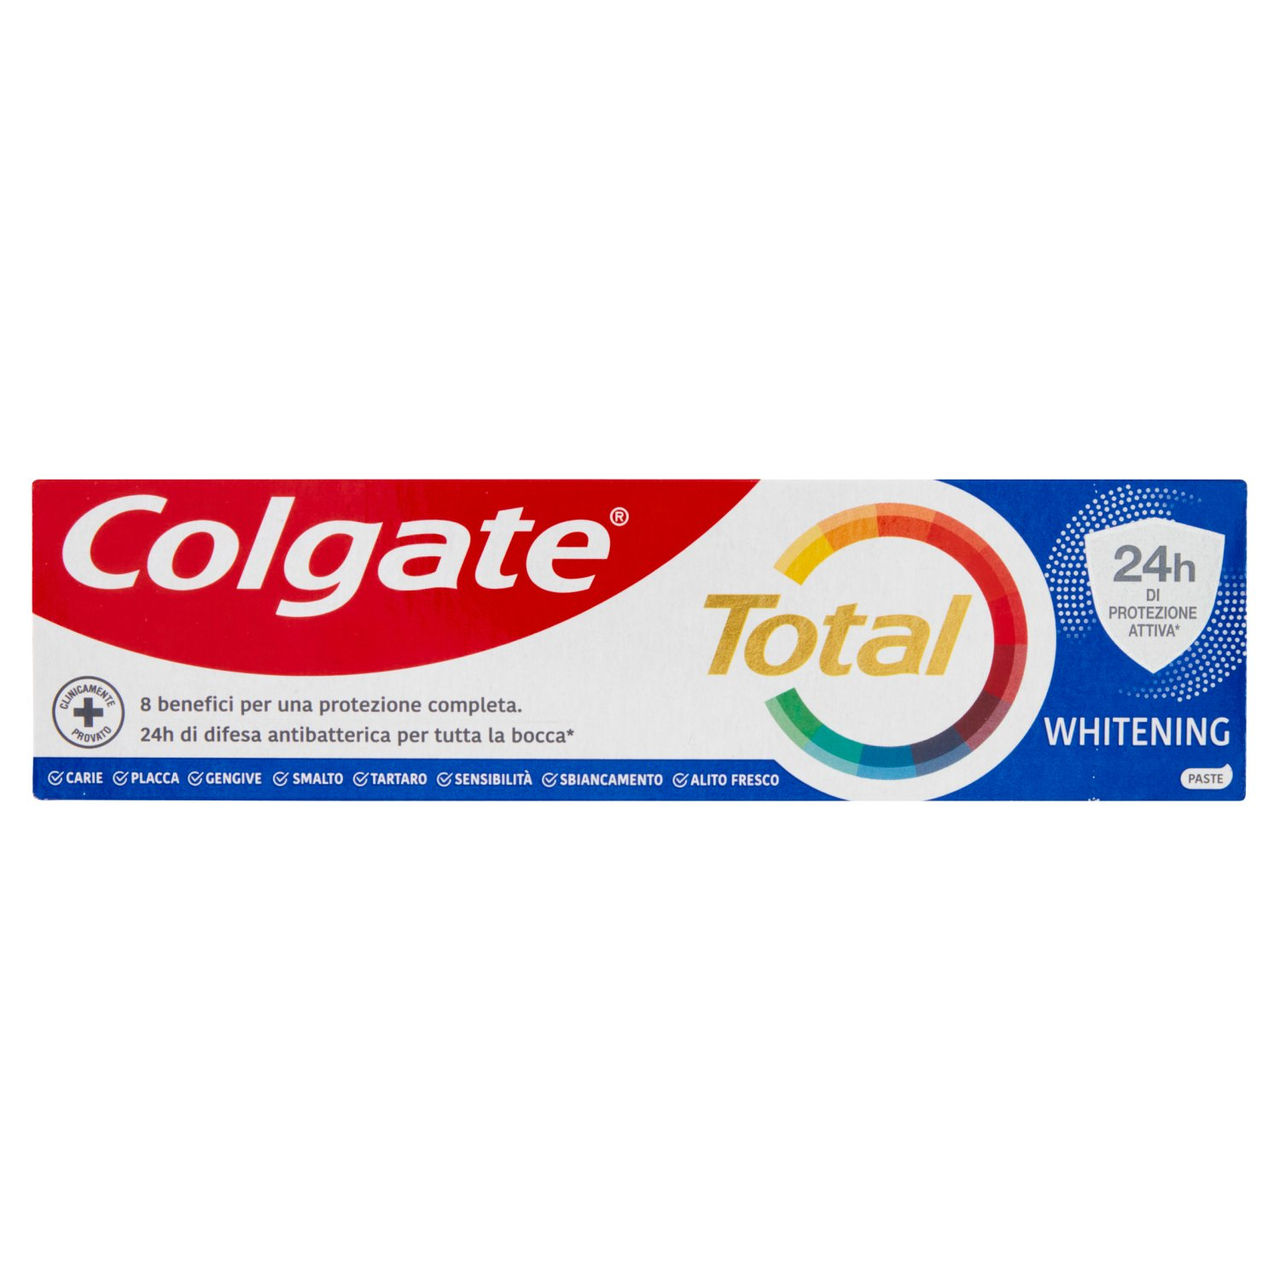 Colgate dentifricio Total Whitening protezione 24h